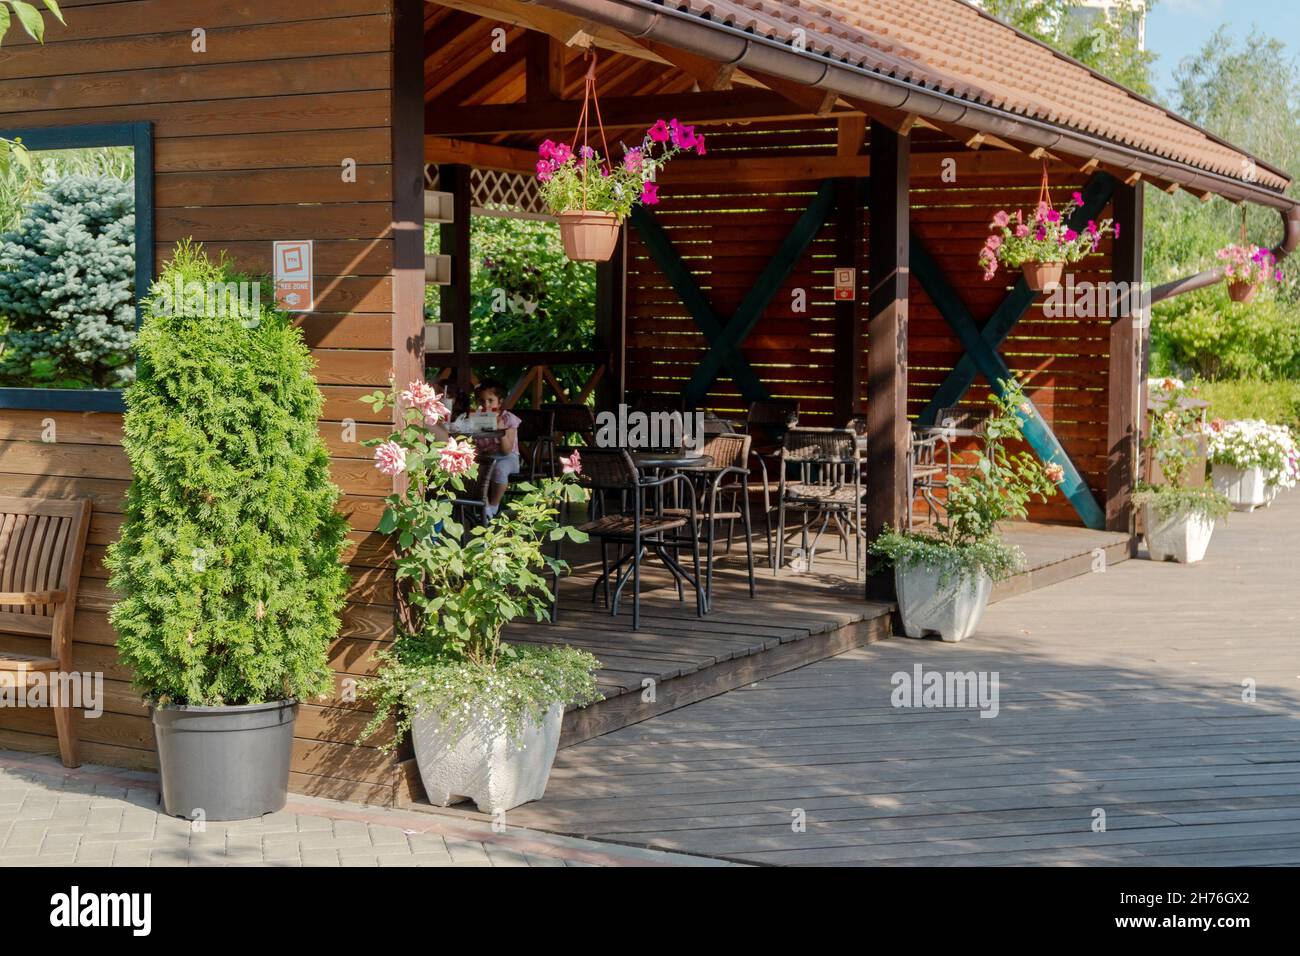 Una veranda in legno aperta dove potrete mangiare il vostro cibo nel parco Garden of Dreams in una giornata estiva soleggiata. Foto Stock